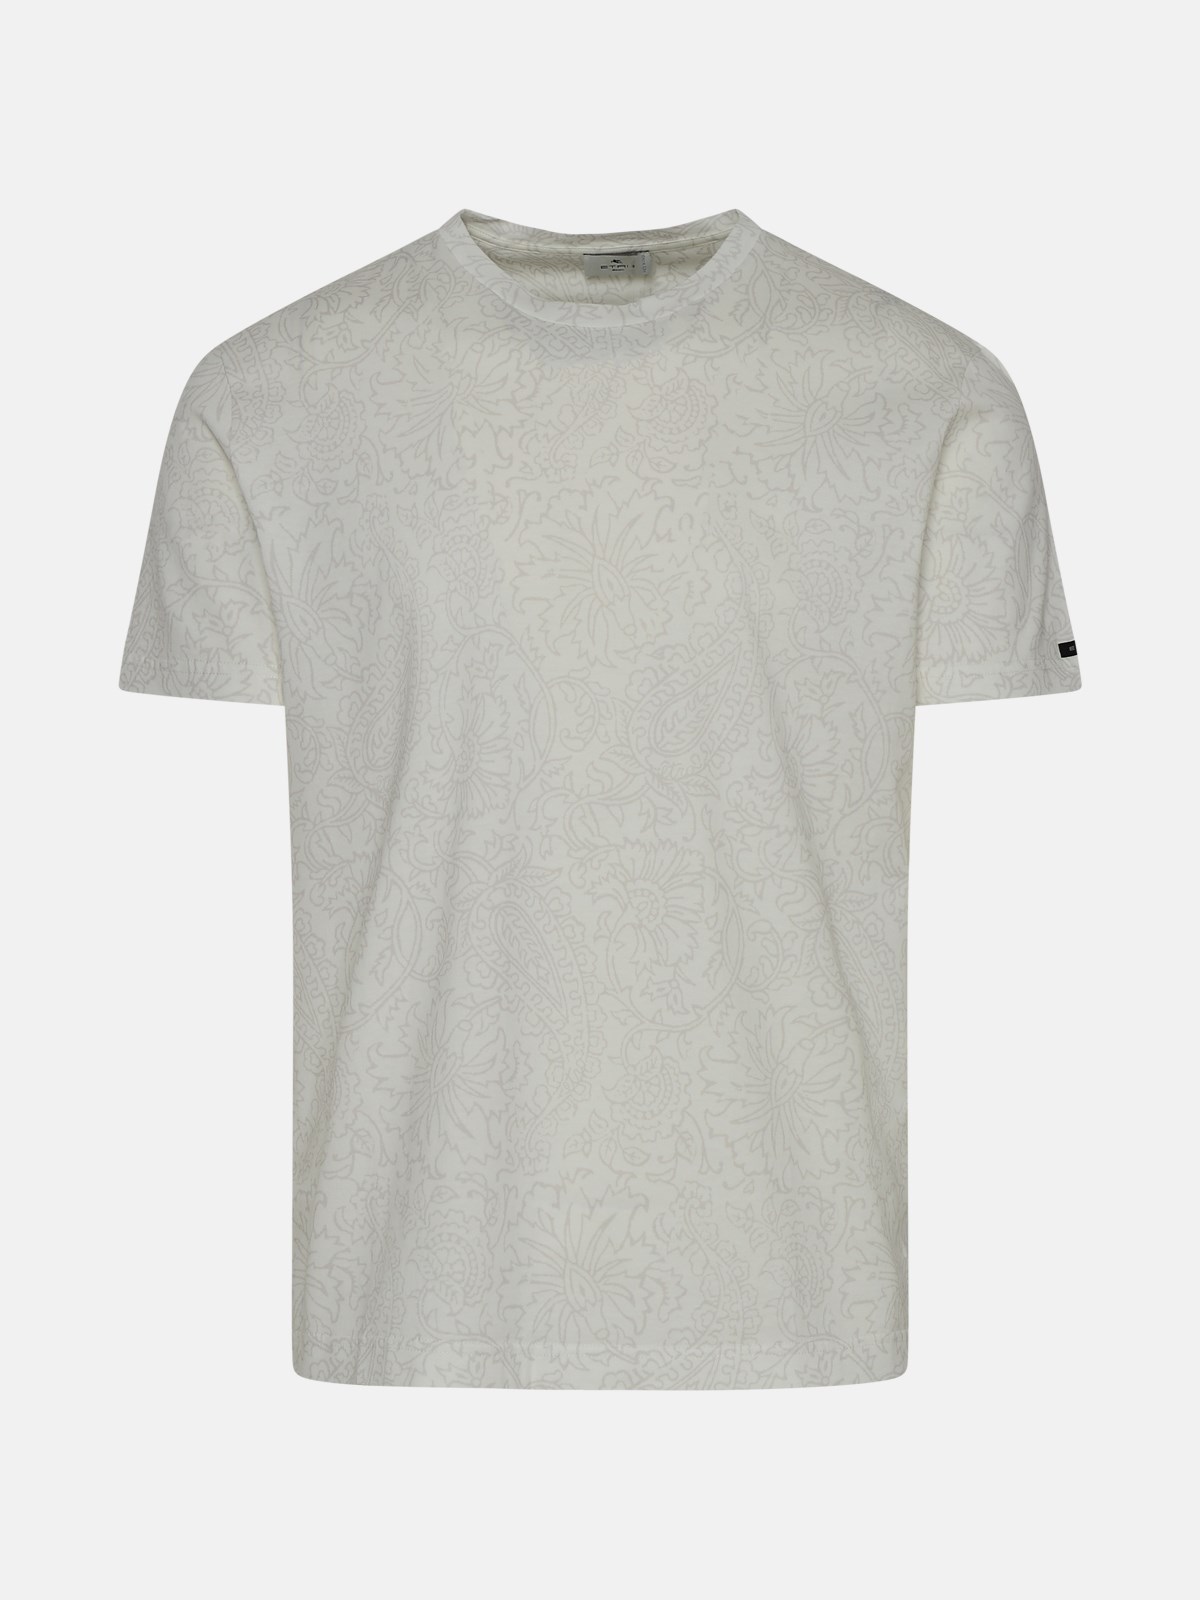 Etro White Cotton T-shirt